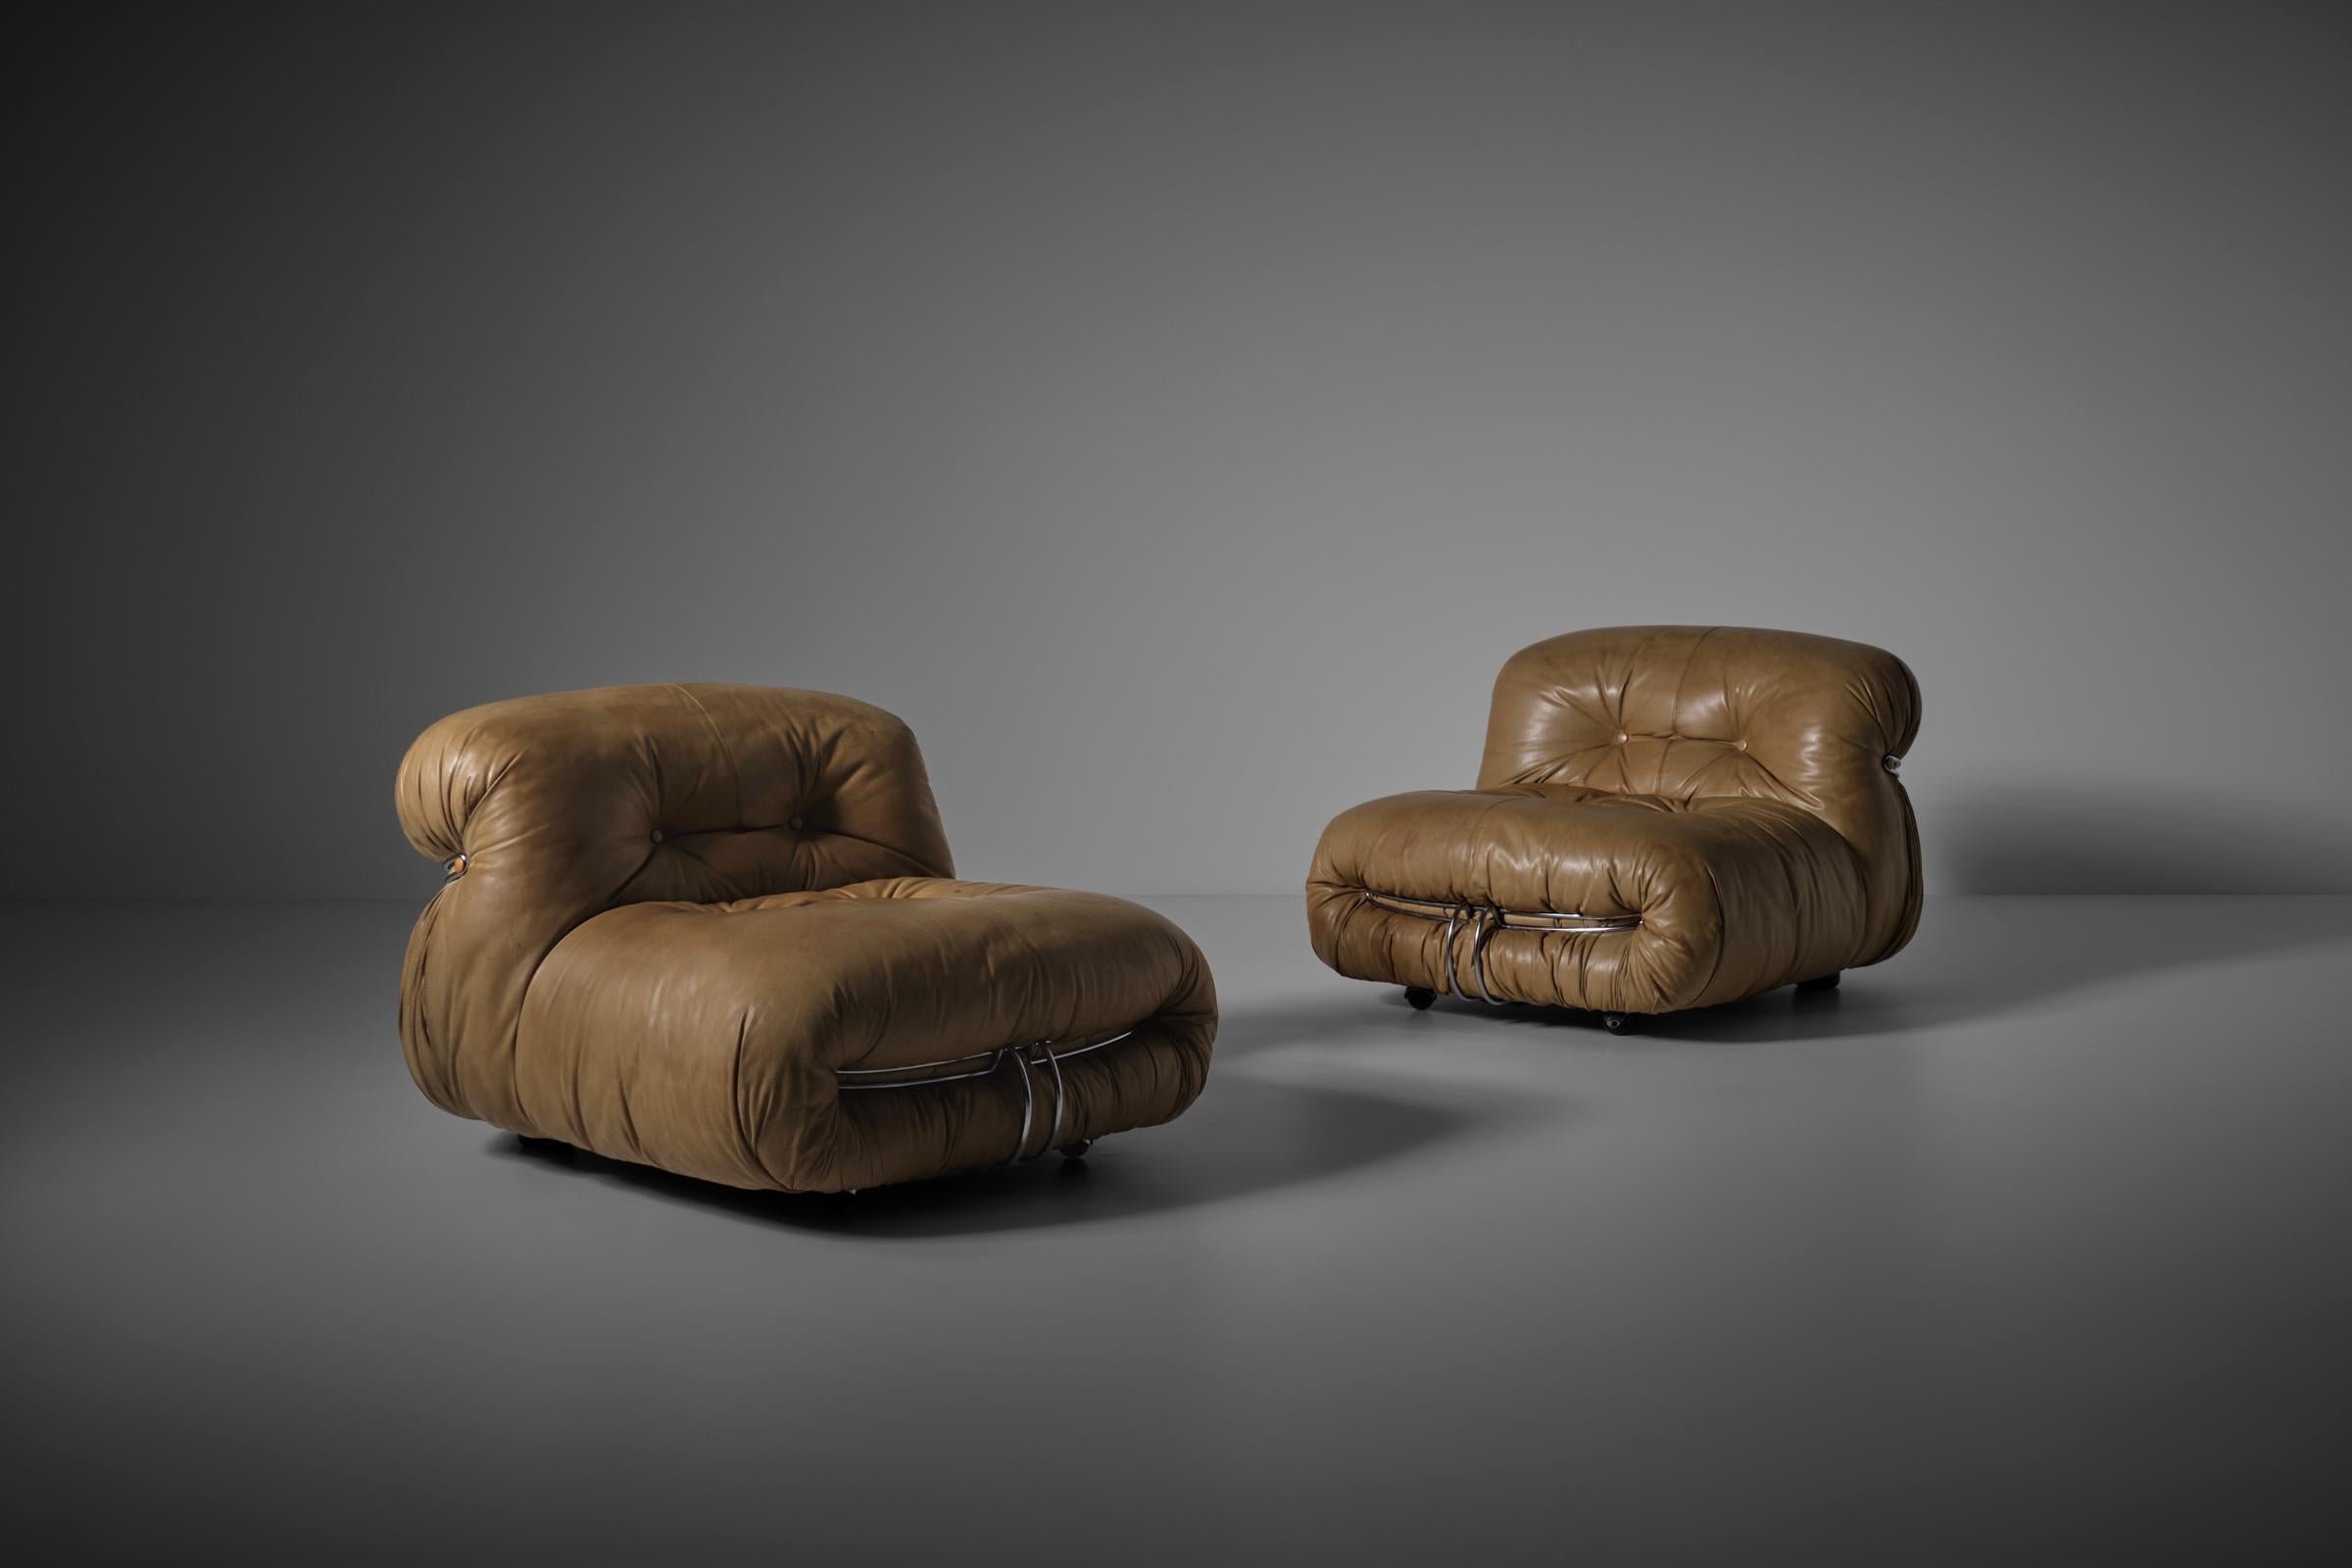 Ein Paar Soriana-Sessel von Afra & Tobia Scarpa für Cassina, Italien 1969. Die Stühle haben noch ihre ursprünglichen Lederbezüge, die ihnen viel Charakter verleihen. Der ursprüngliche Schaumstoff zeigt seine charakteristische runde und voluminöse